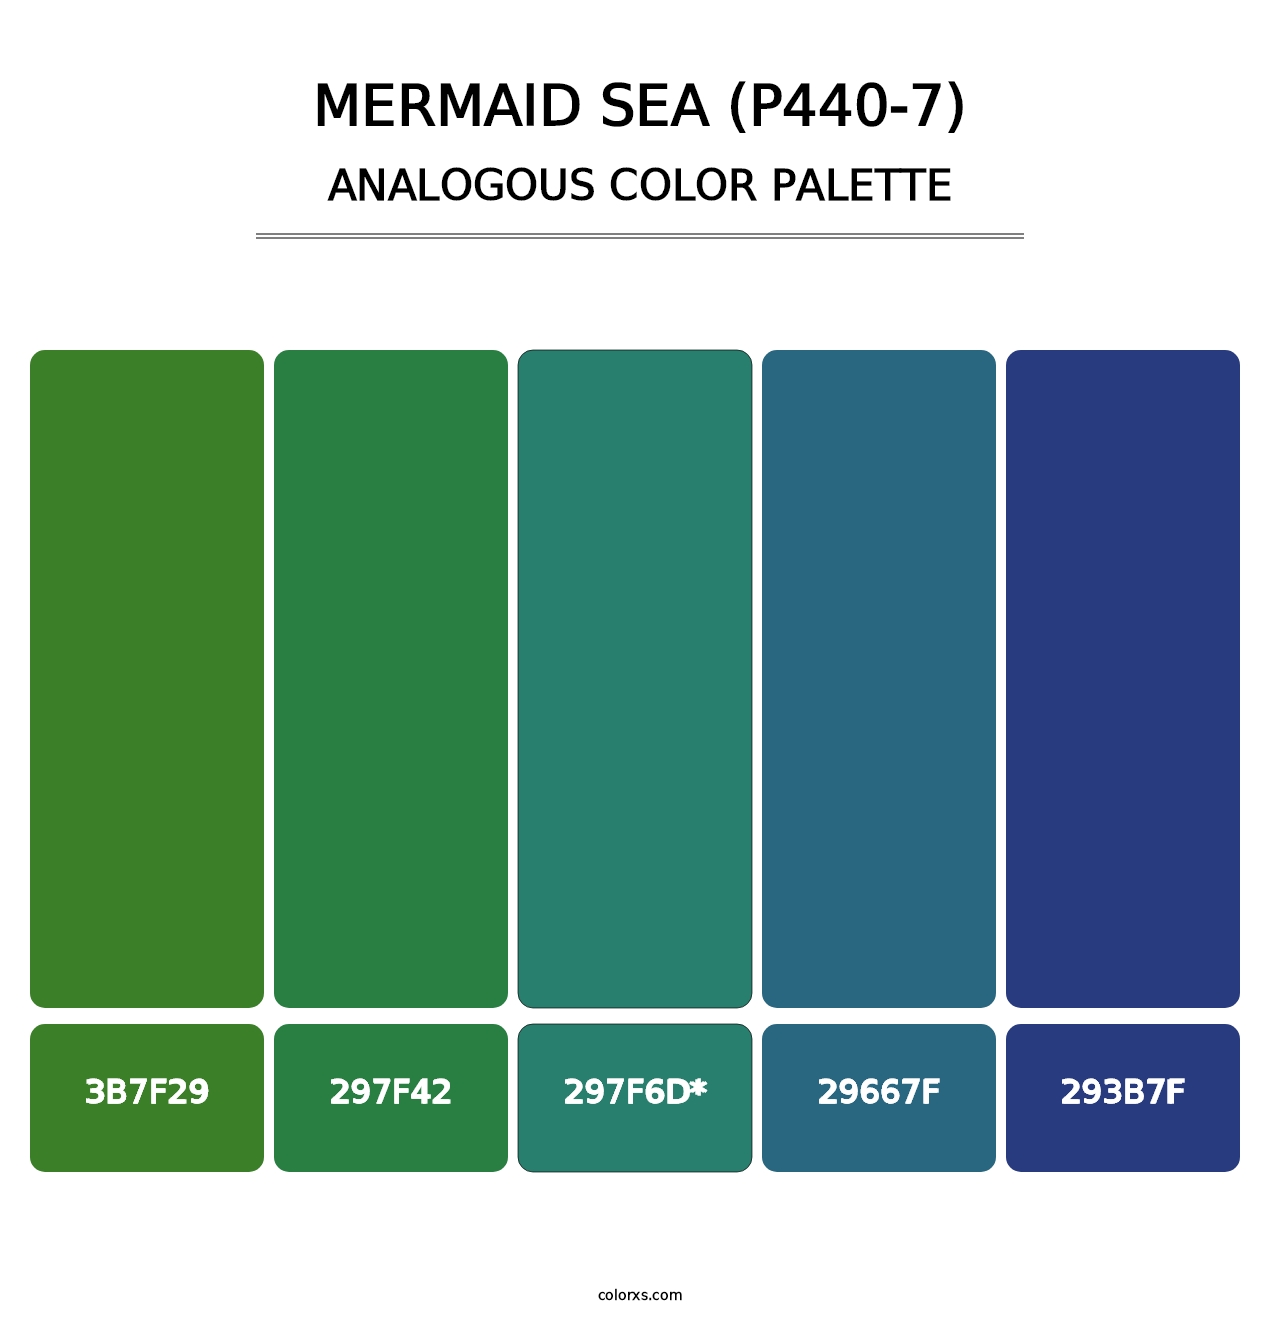 Mermaid Sea (P440-7) - Analogous Color Palette